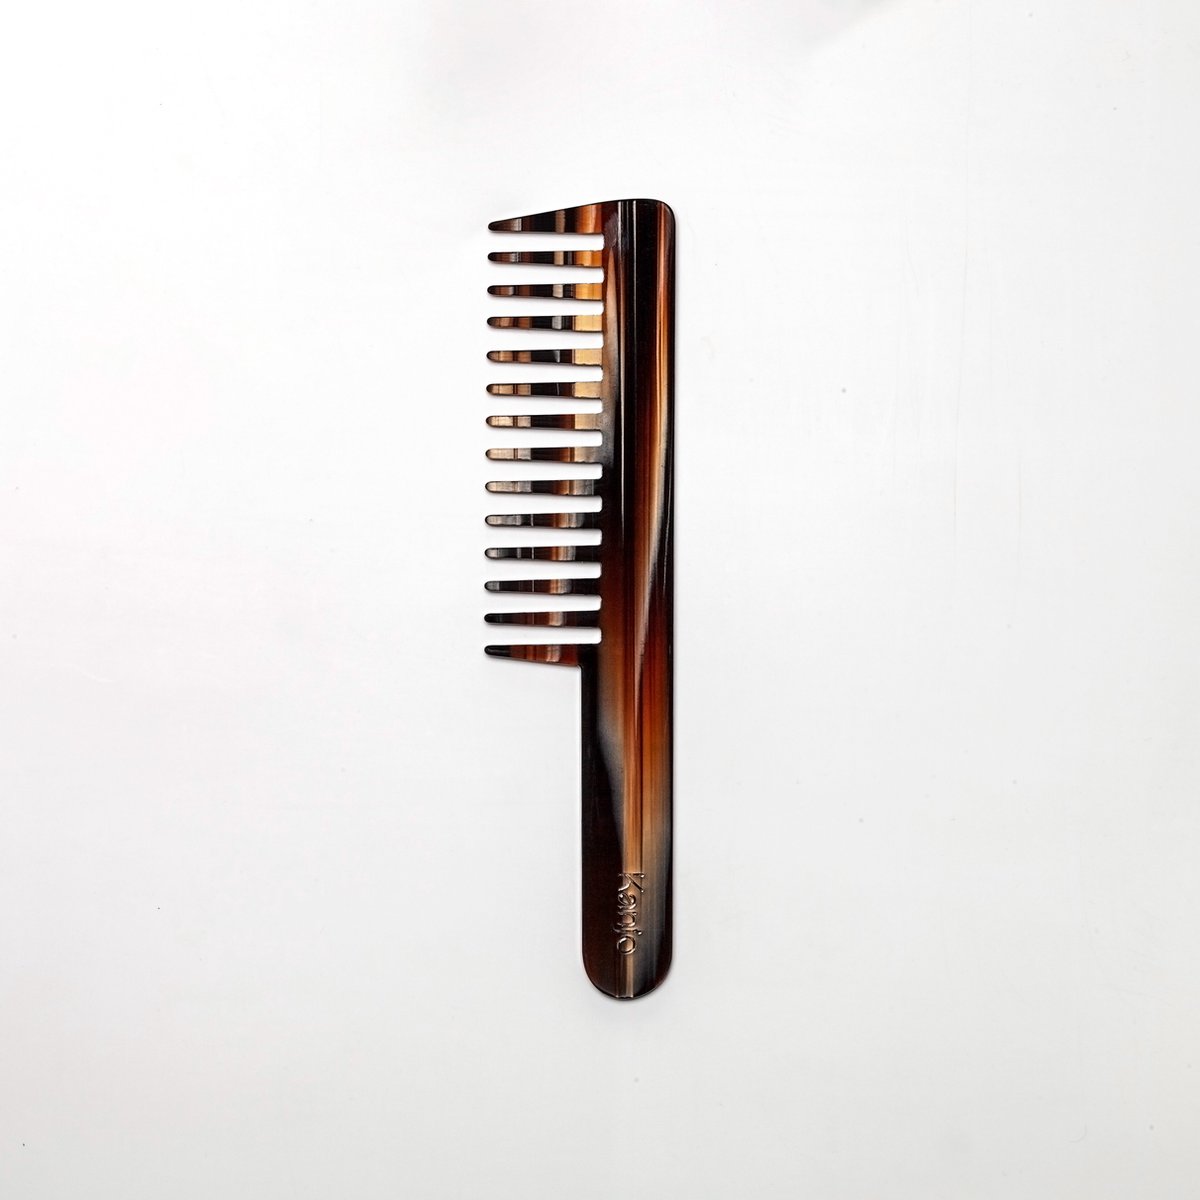 Kanjo - Plasticvrije kam - Professionele kam - Large - Donkerbruin - Faded Oak - 100% Cellulose acetaat - Duurzaam - Anti-statisch - Hair Comb - Recycleerbaar